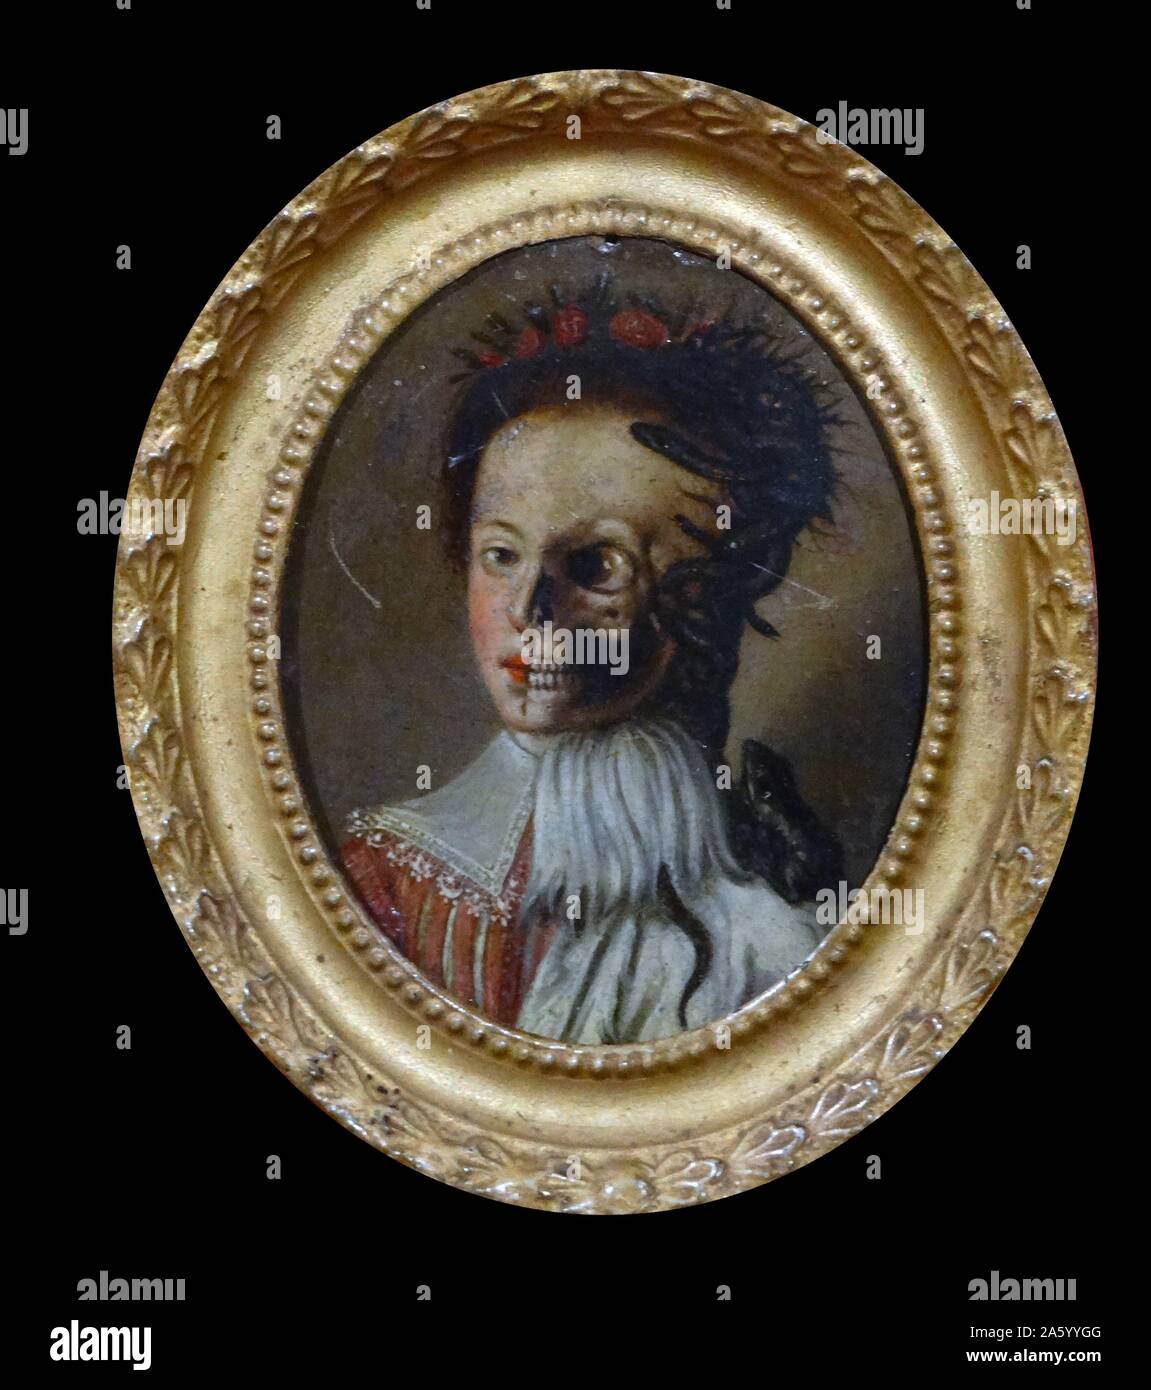 Ein menschliches Gesicht: Halb lebendig, halb tot ". Italienisch, Öl auf Kupfer, aus dem 18. Jahrhundert. Stockfoto